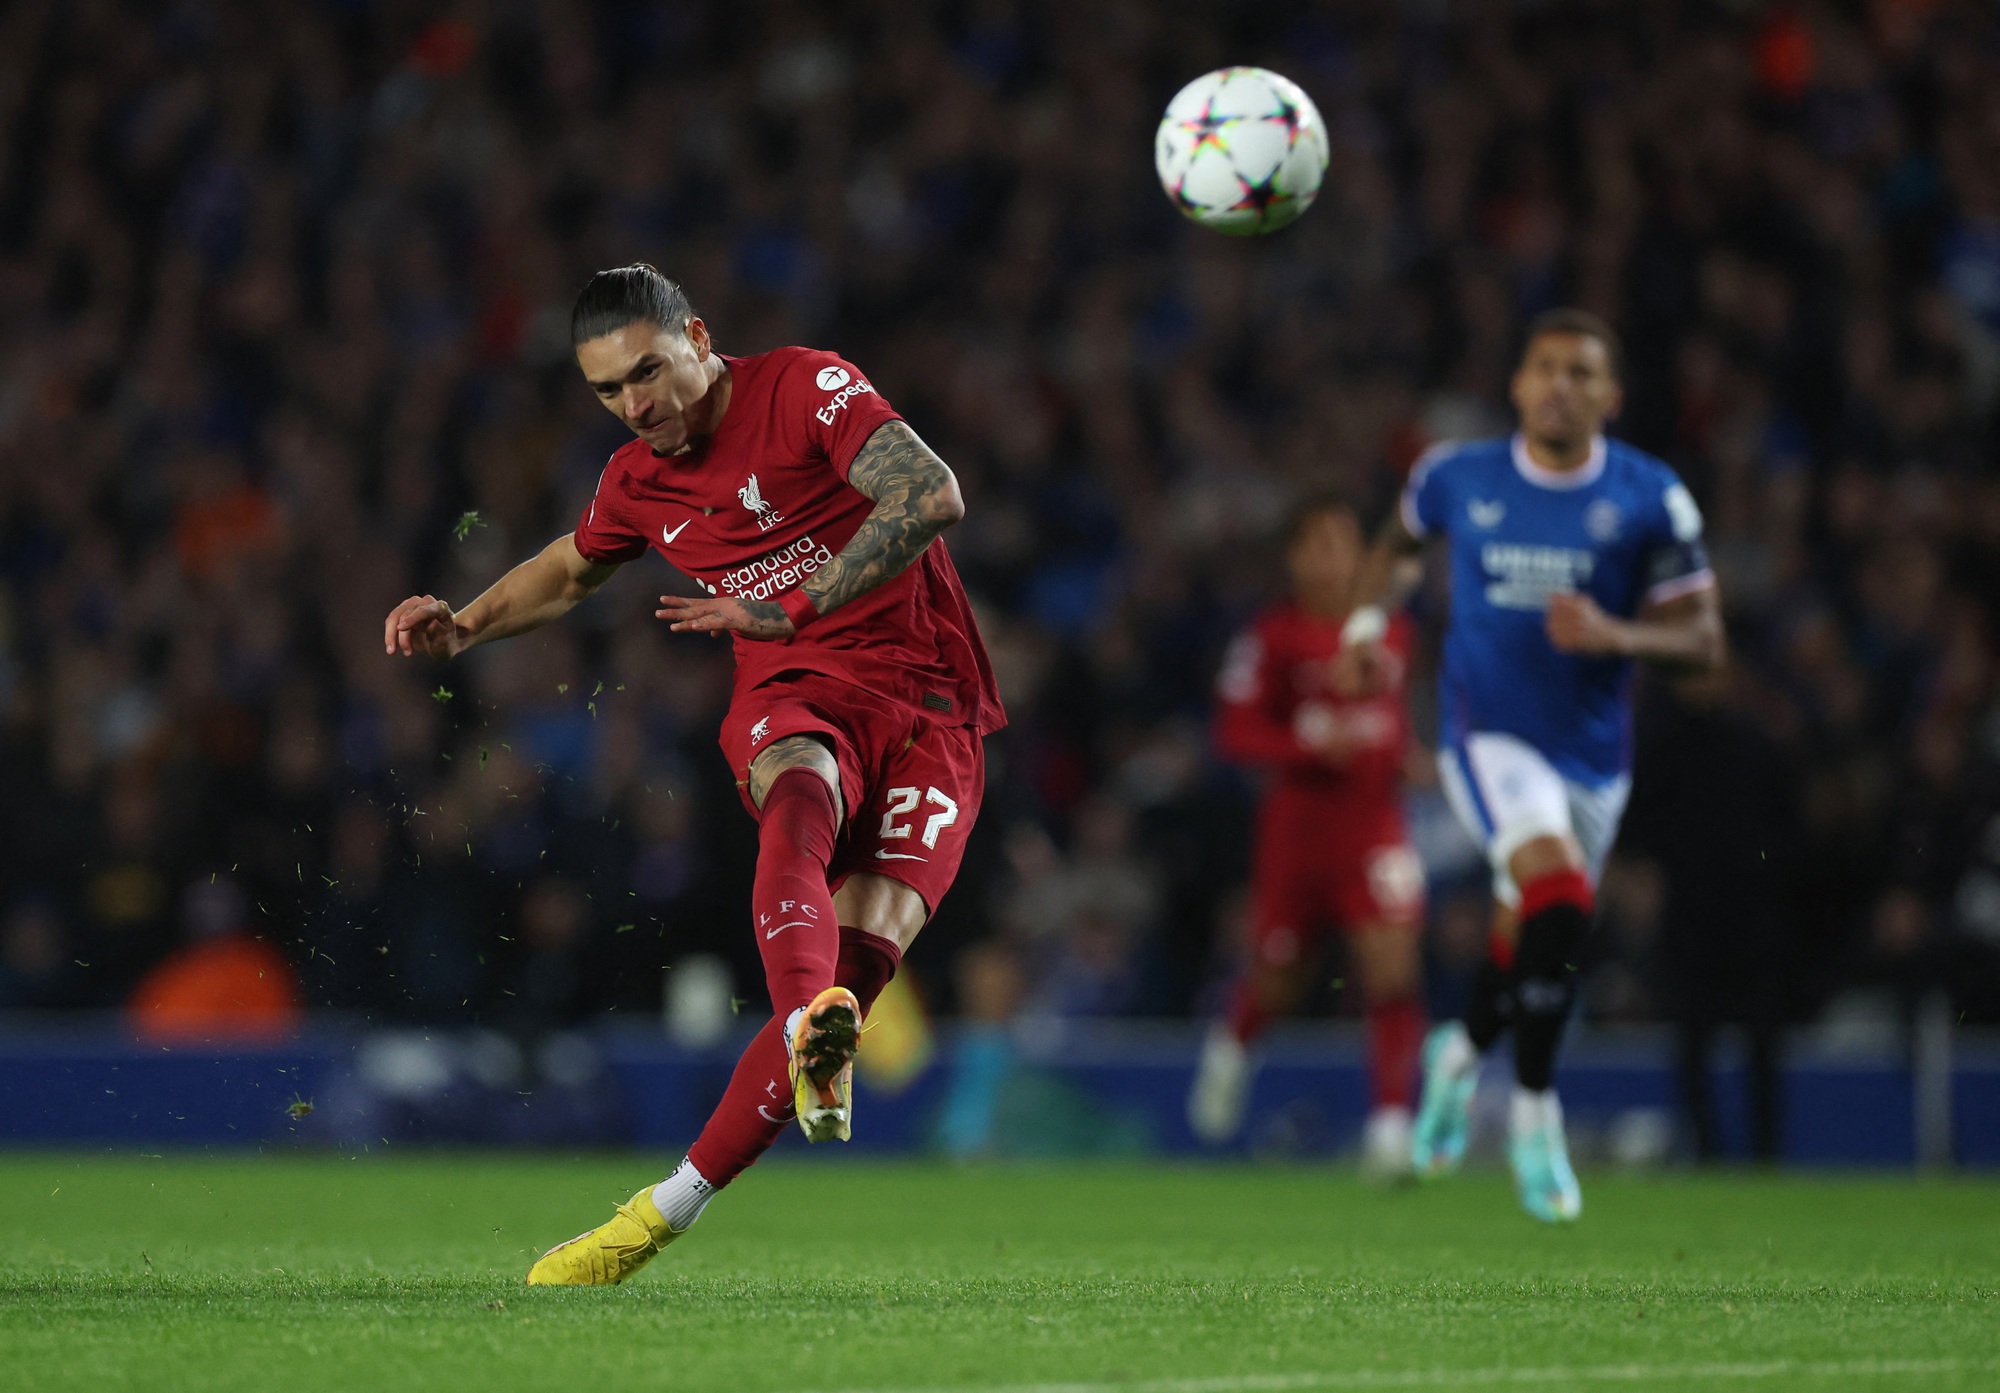 Salah 6 phút lập hat-trick, Liverpool đại thắng ở Champions League - Ảnh 3.